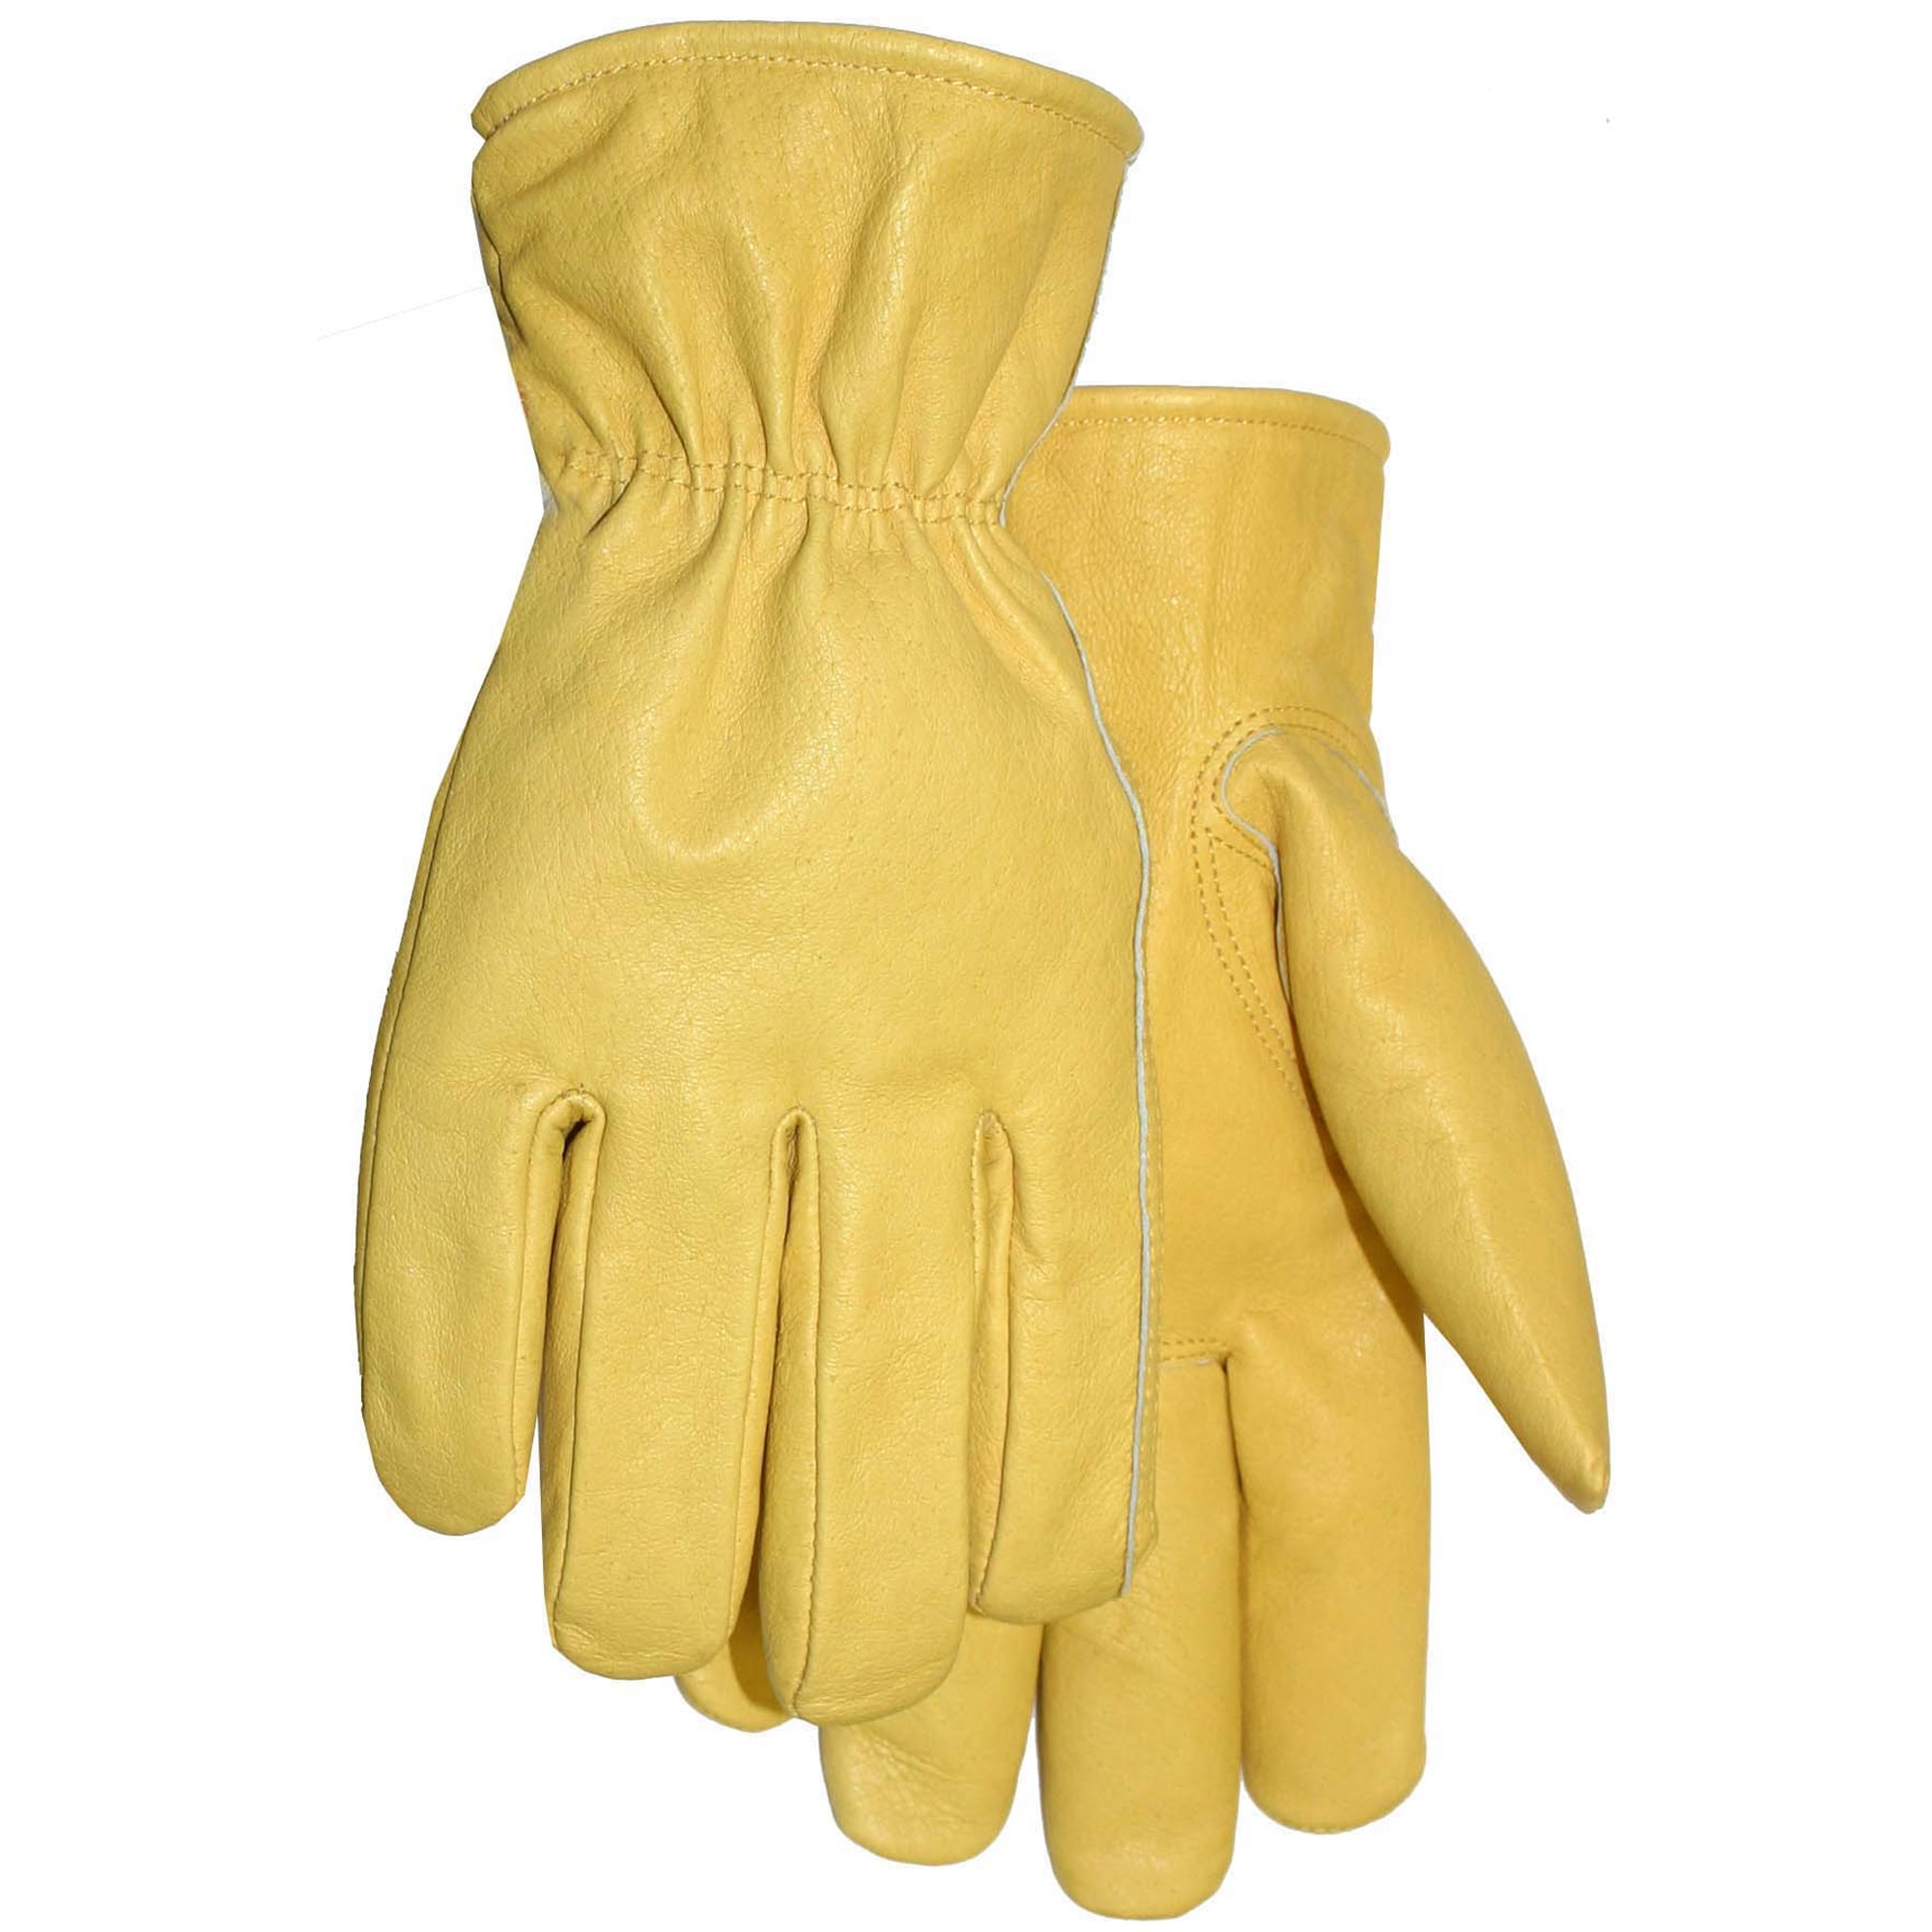 Midwest Gloves Pigskin Driver Glove - Walmart.com